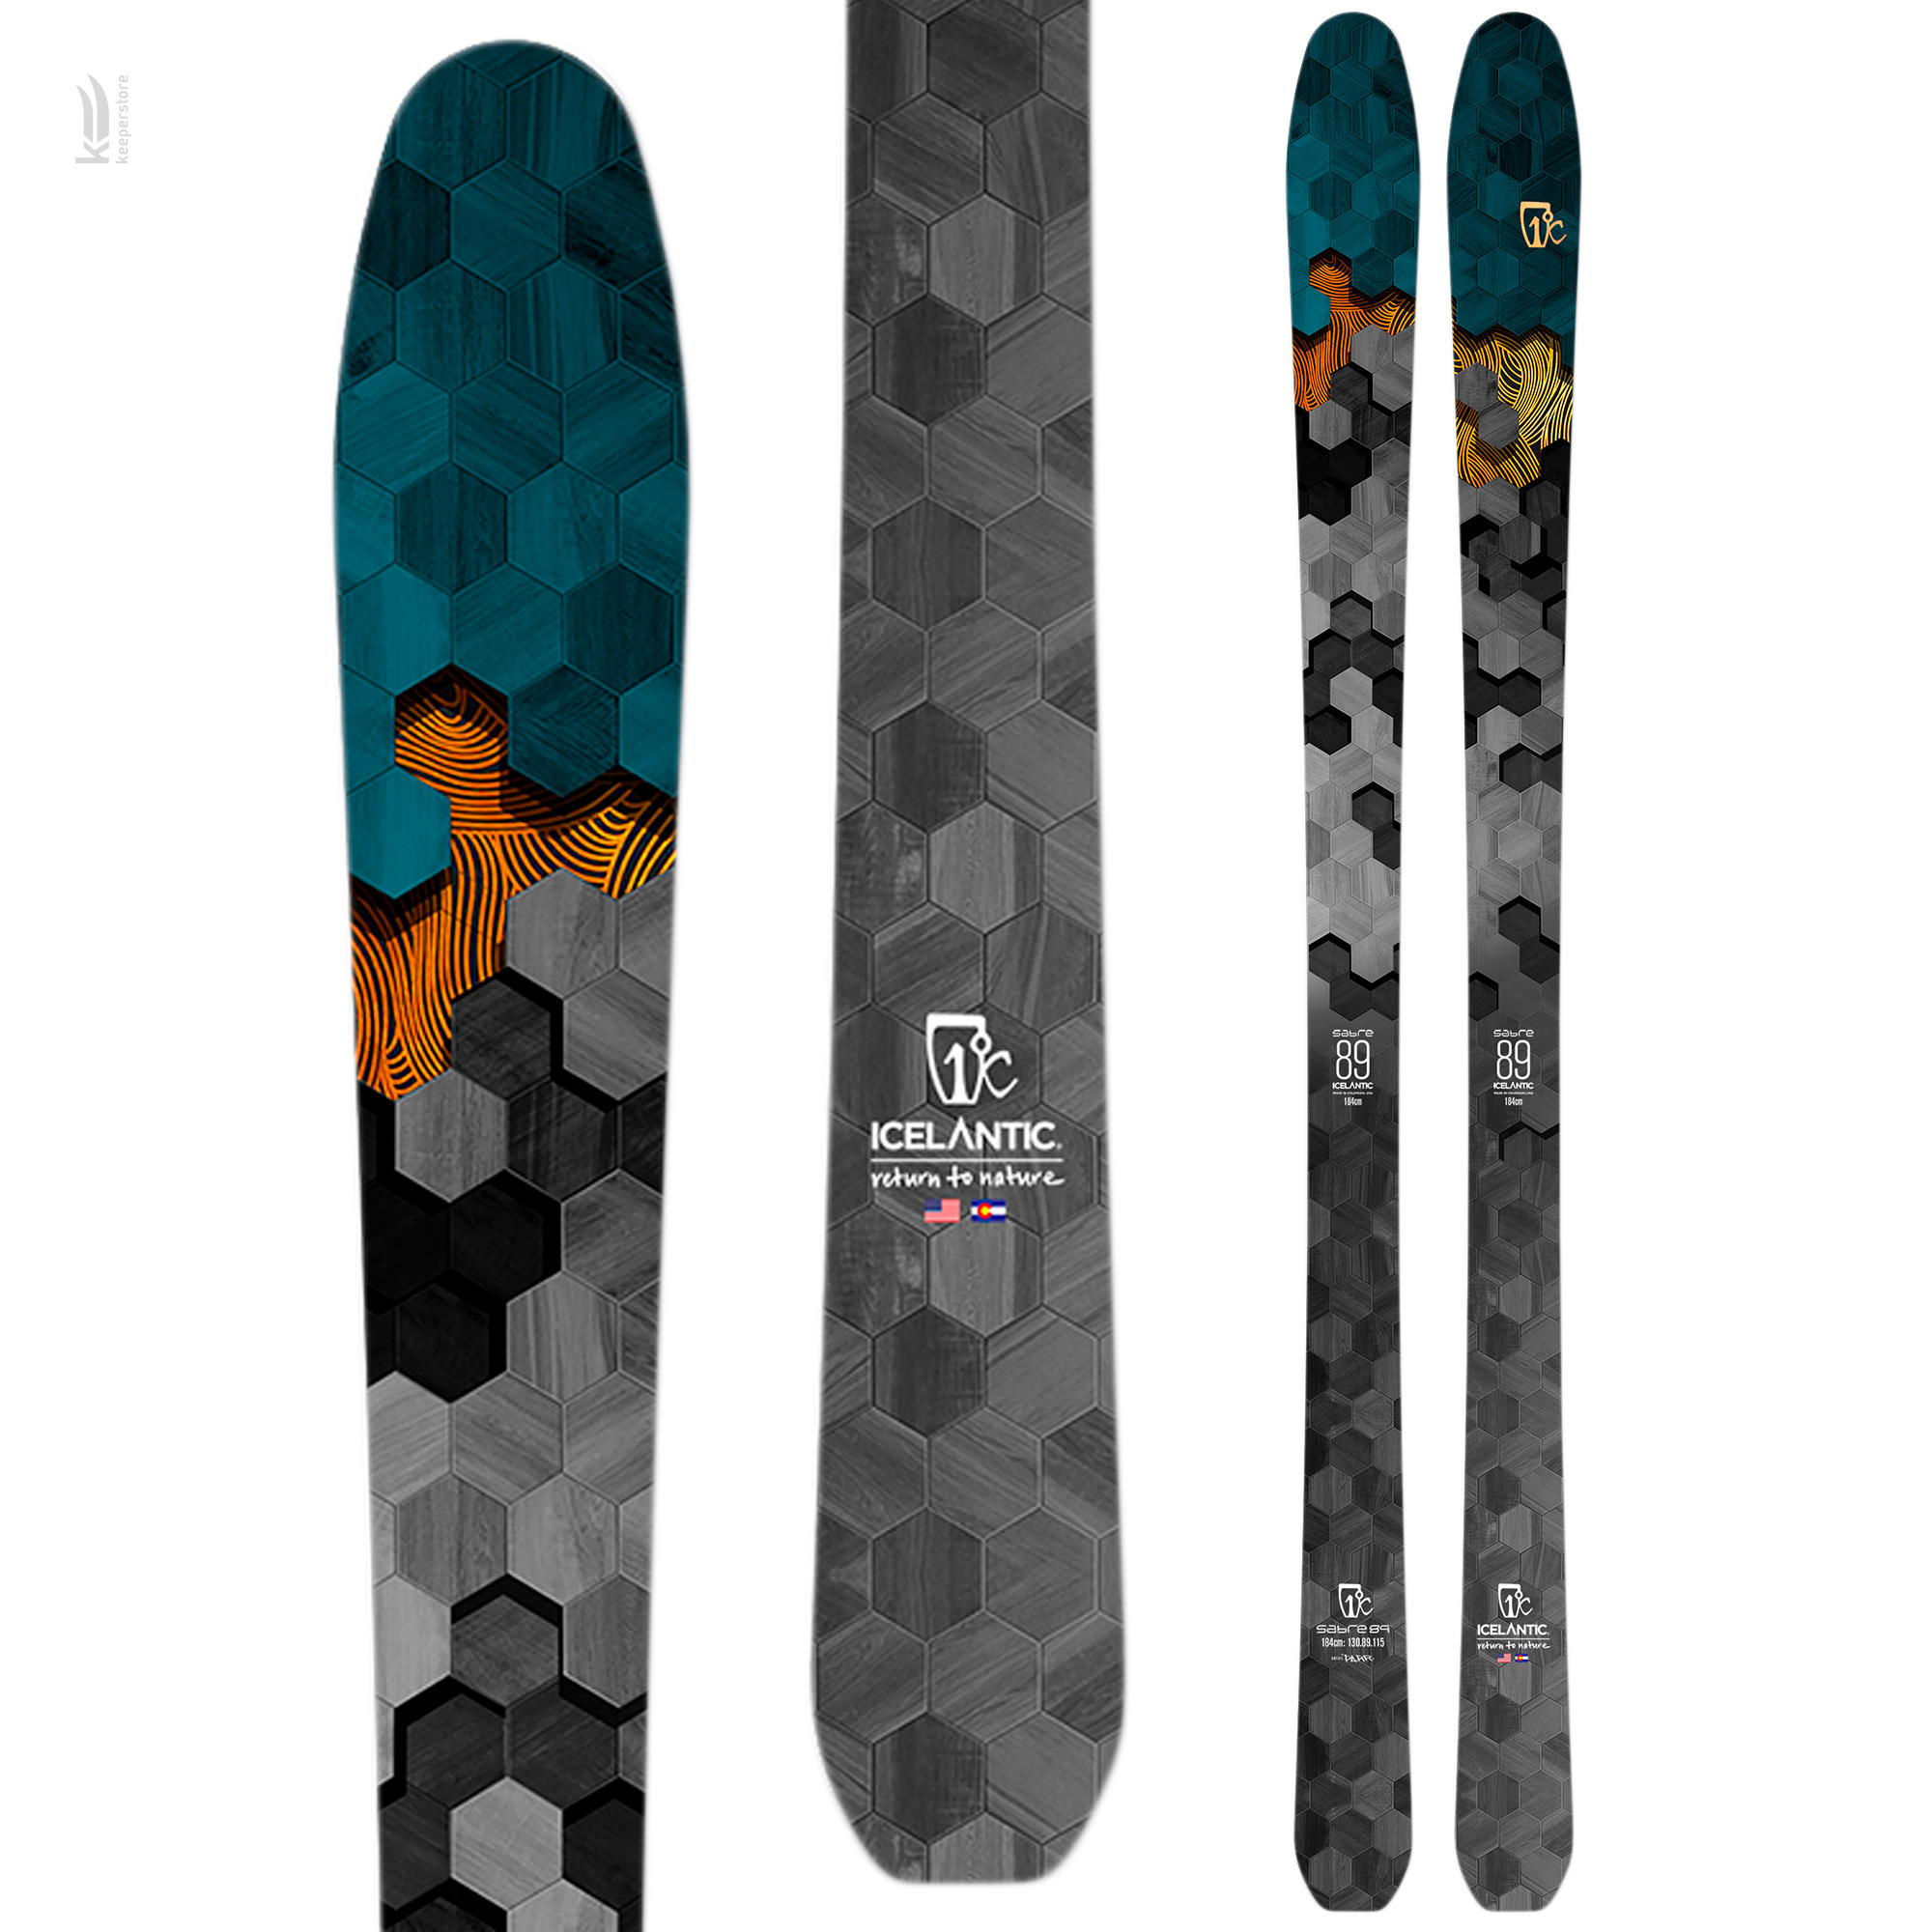 Лыжи для карвинга Icelantic Sabre 89 2020/2021